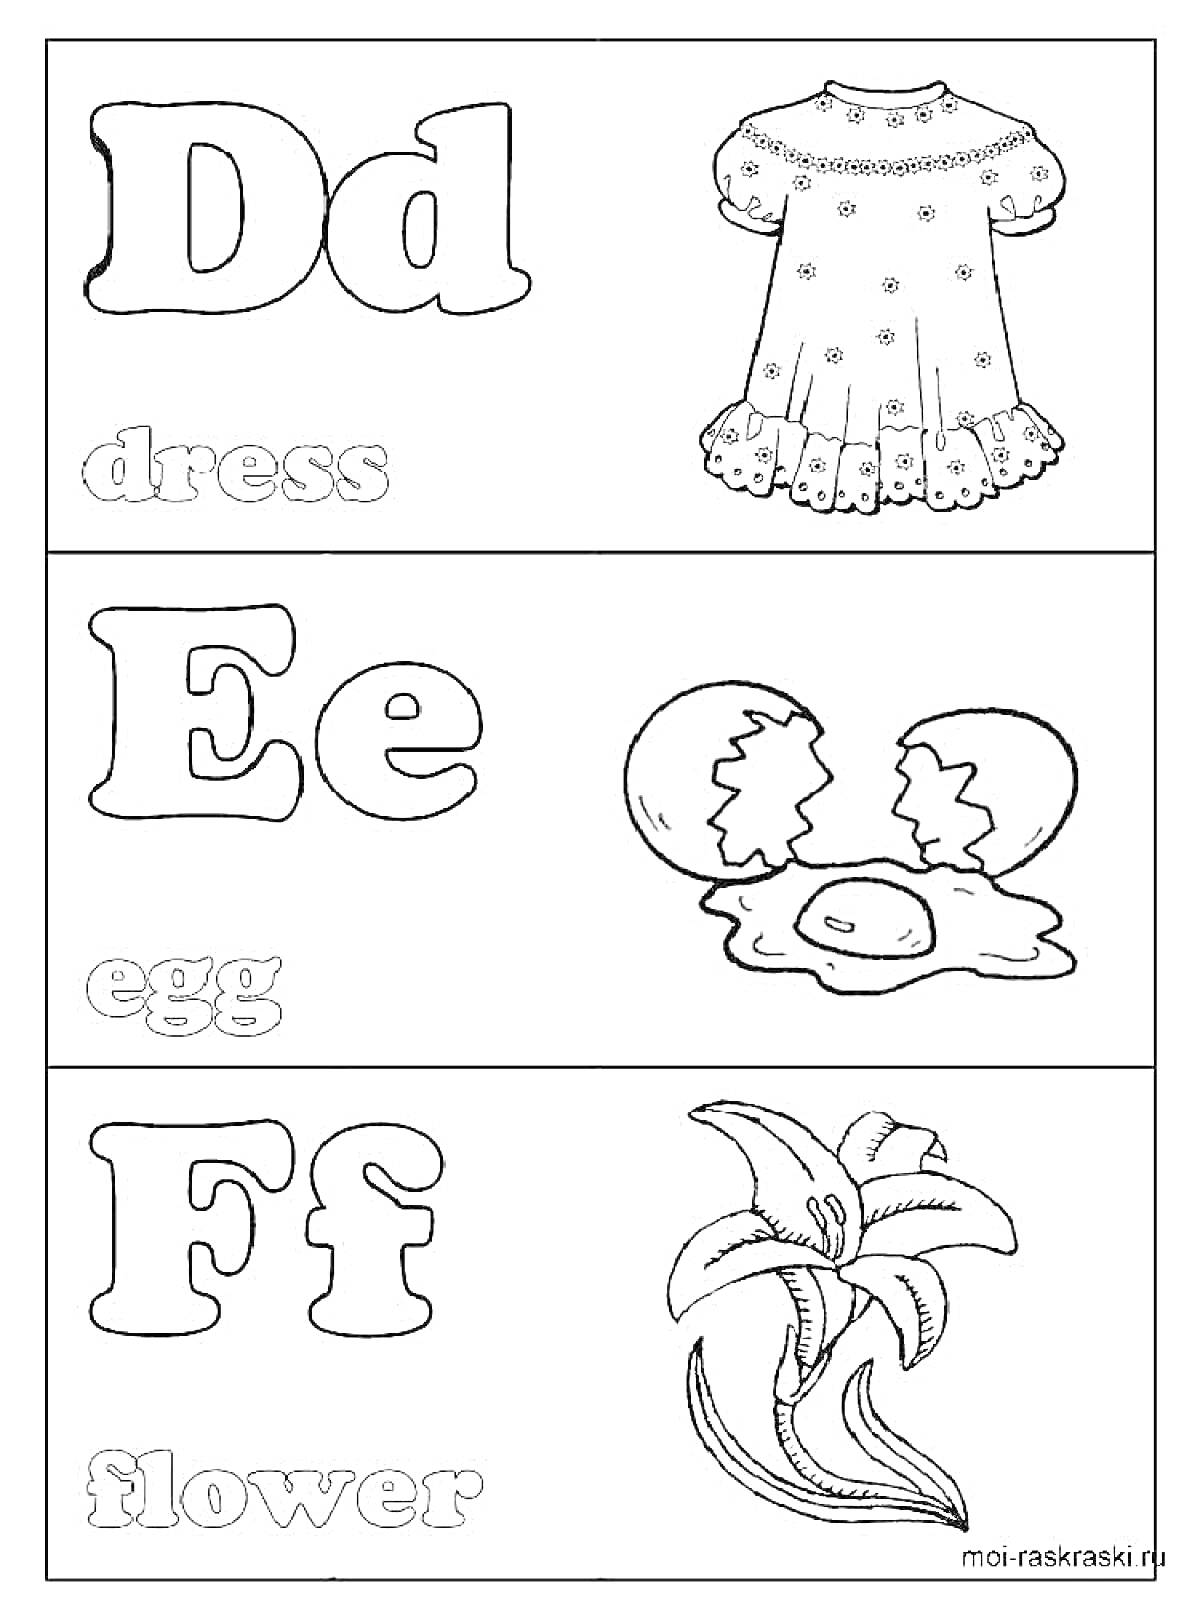 Раскраска Dd - dress, Ee - egg, Ff - flower